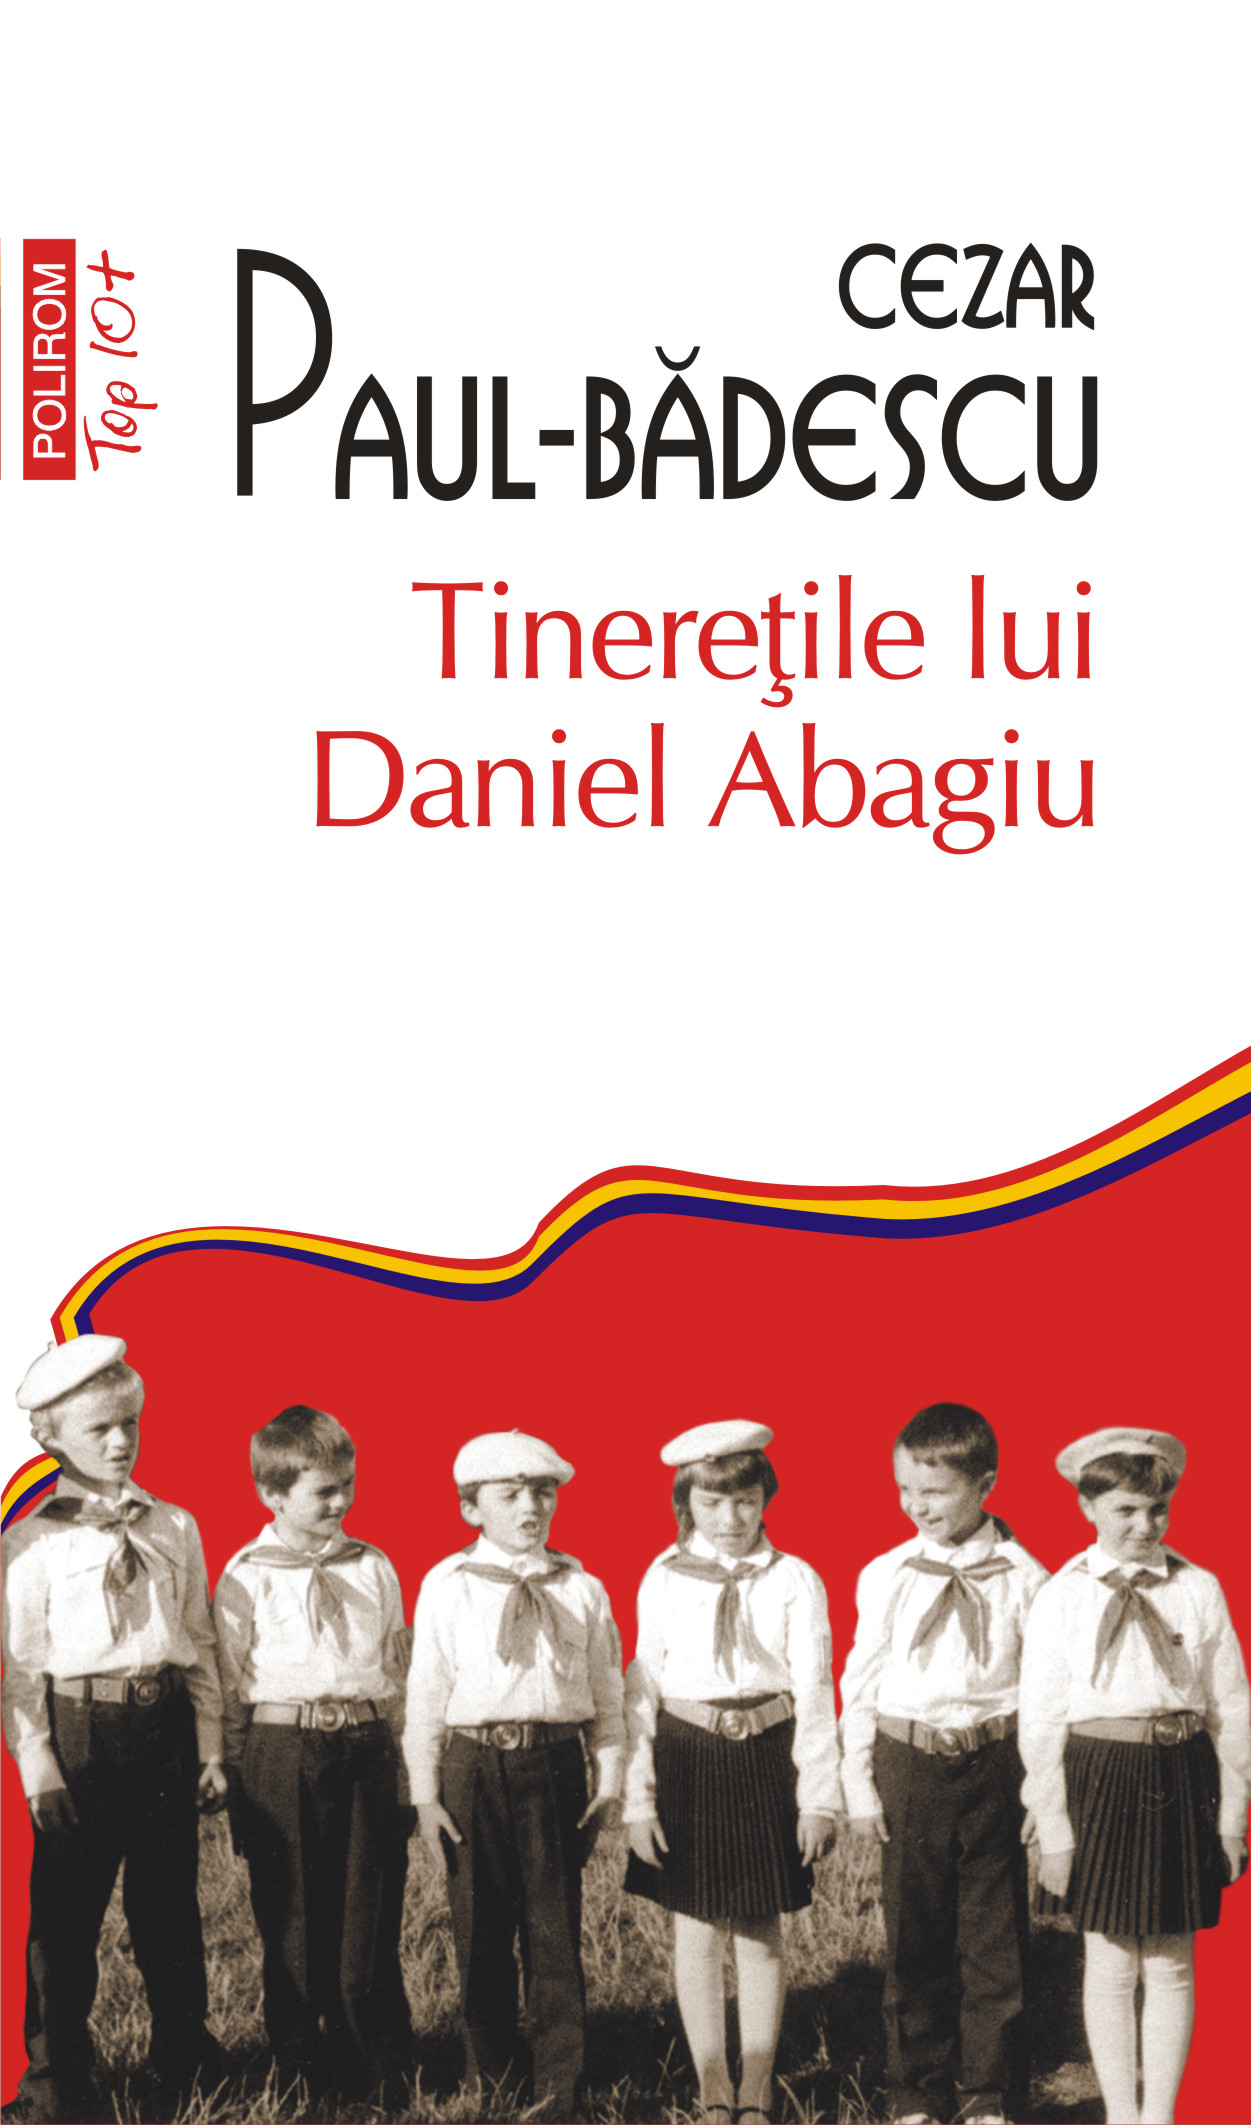 eBook Tineretile lui Daniel Abagiu - Cezar Paul Badescu